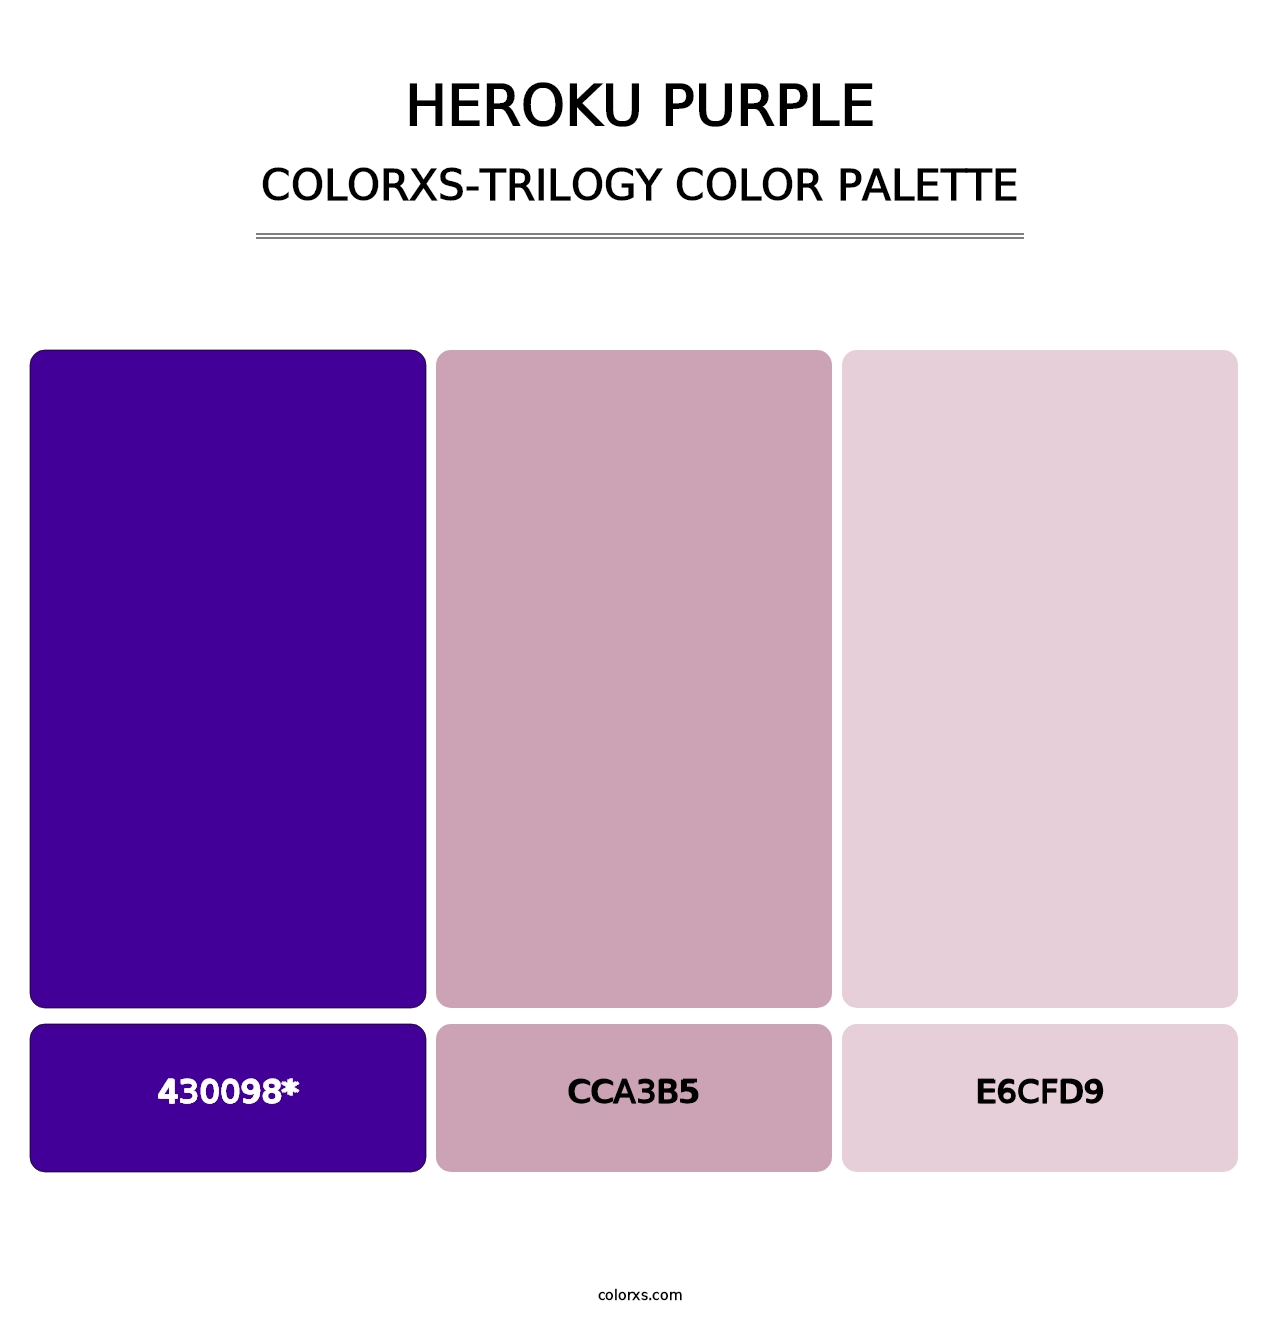 Heroku Purple - Colorxs Trilogy Palette